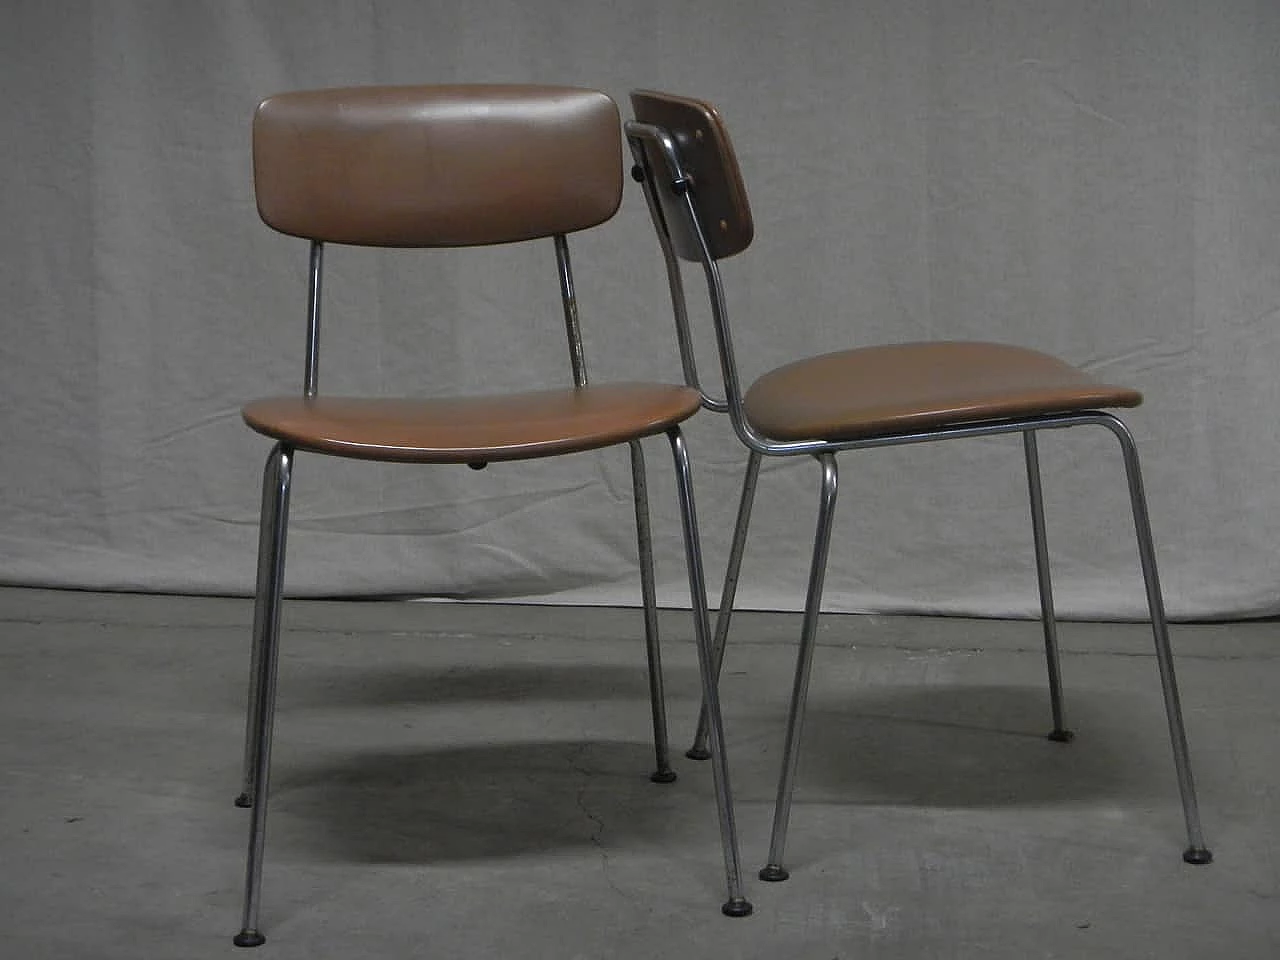 6 skai chairs, '70s 1062032